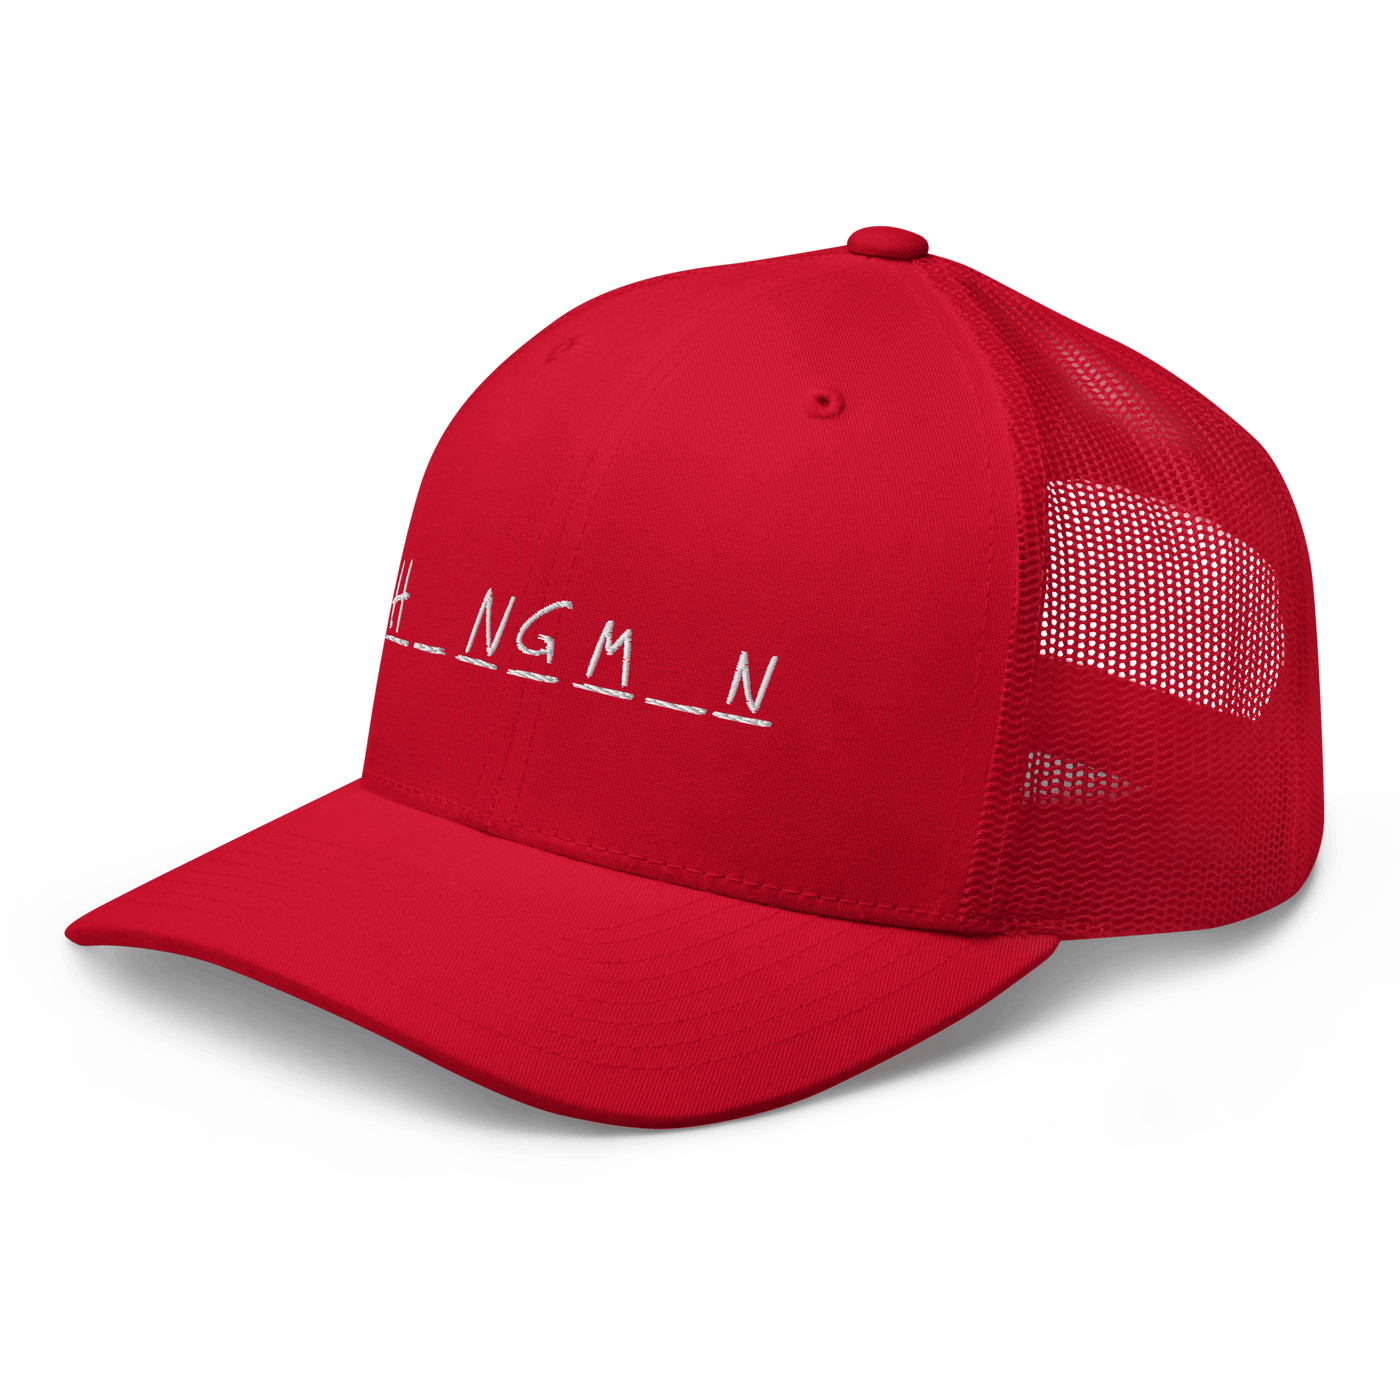 Hangman Trucker Cap - Red - - Just Another Cap Store